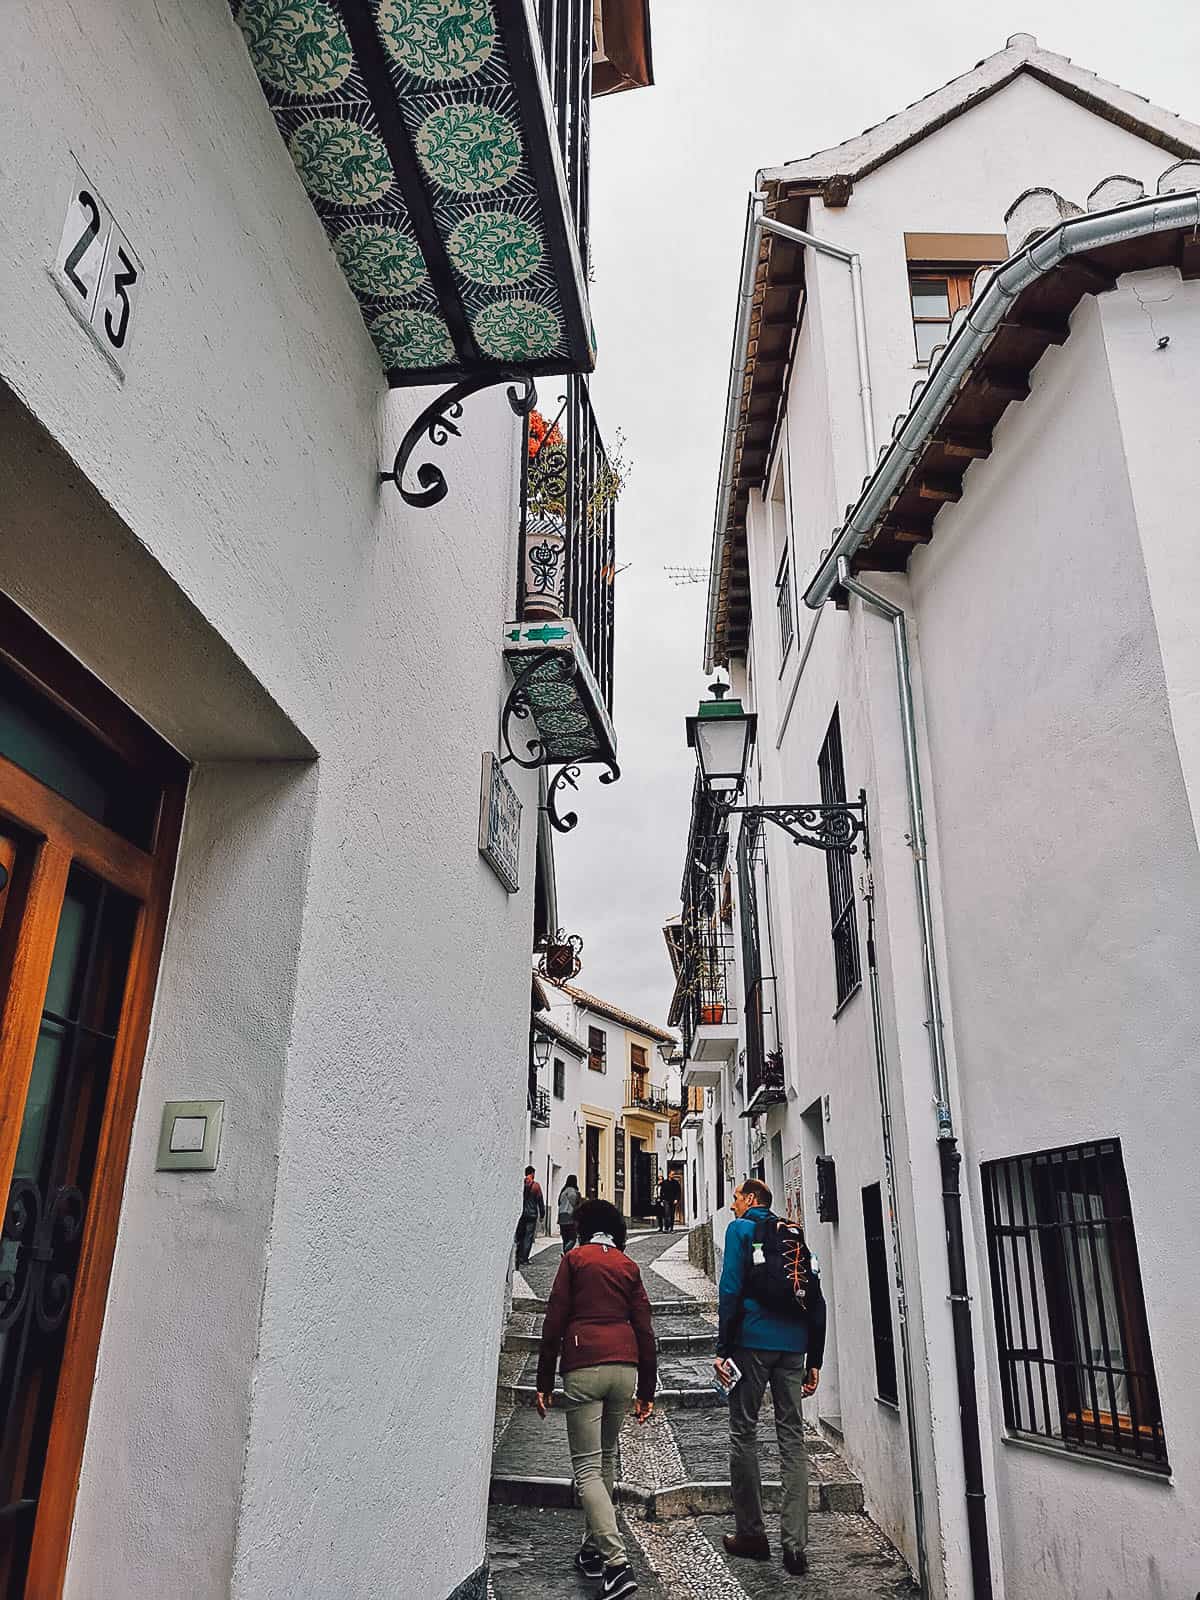 Streets at the Albayzin in Granada, Spain